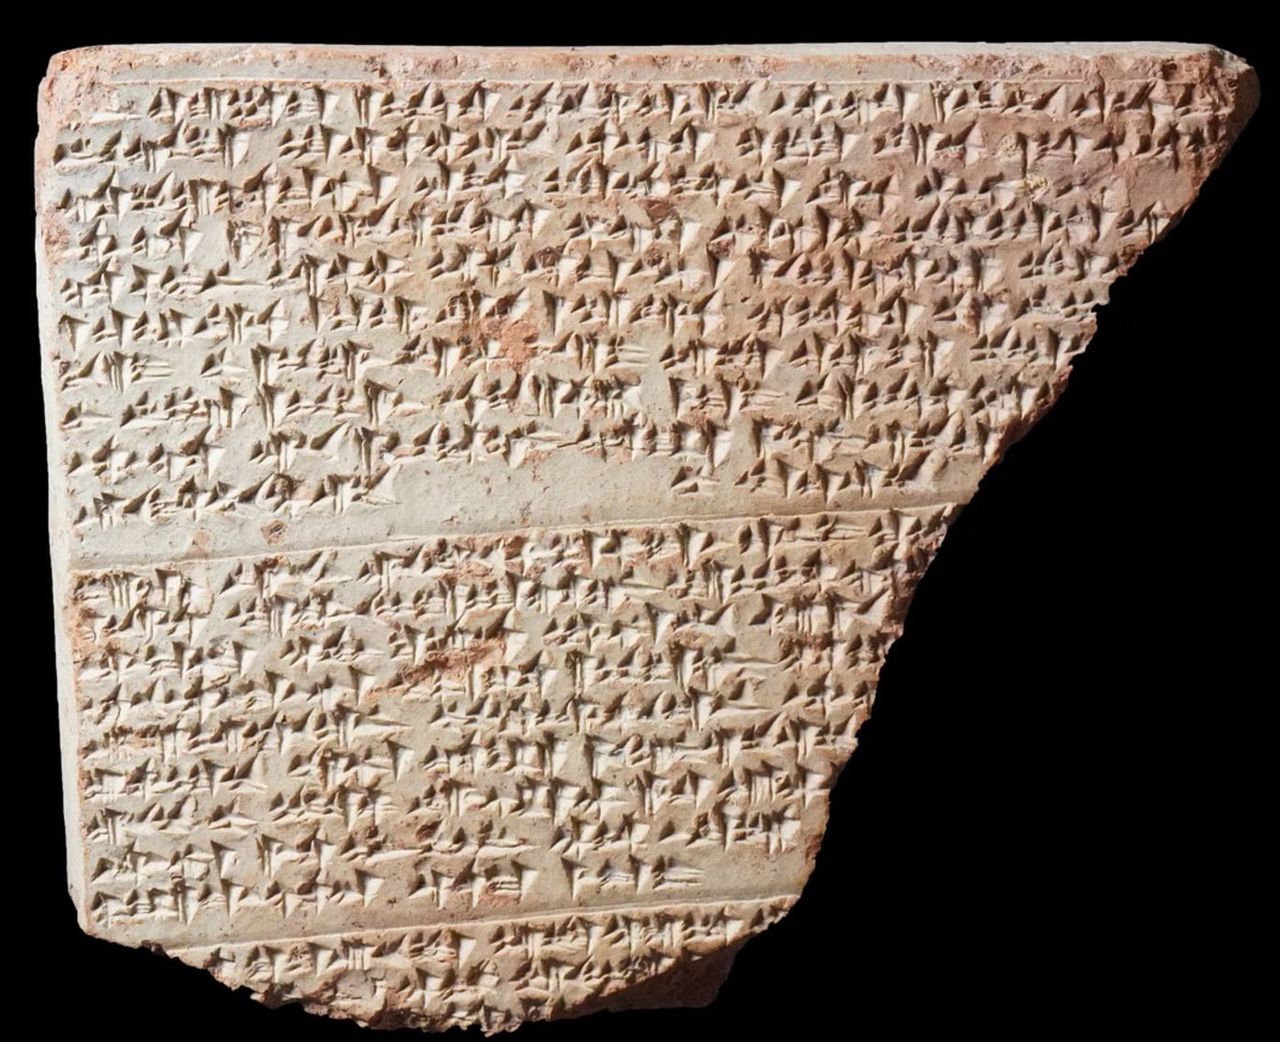 Fragment of text written in cuneiform script